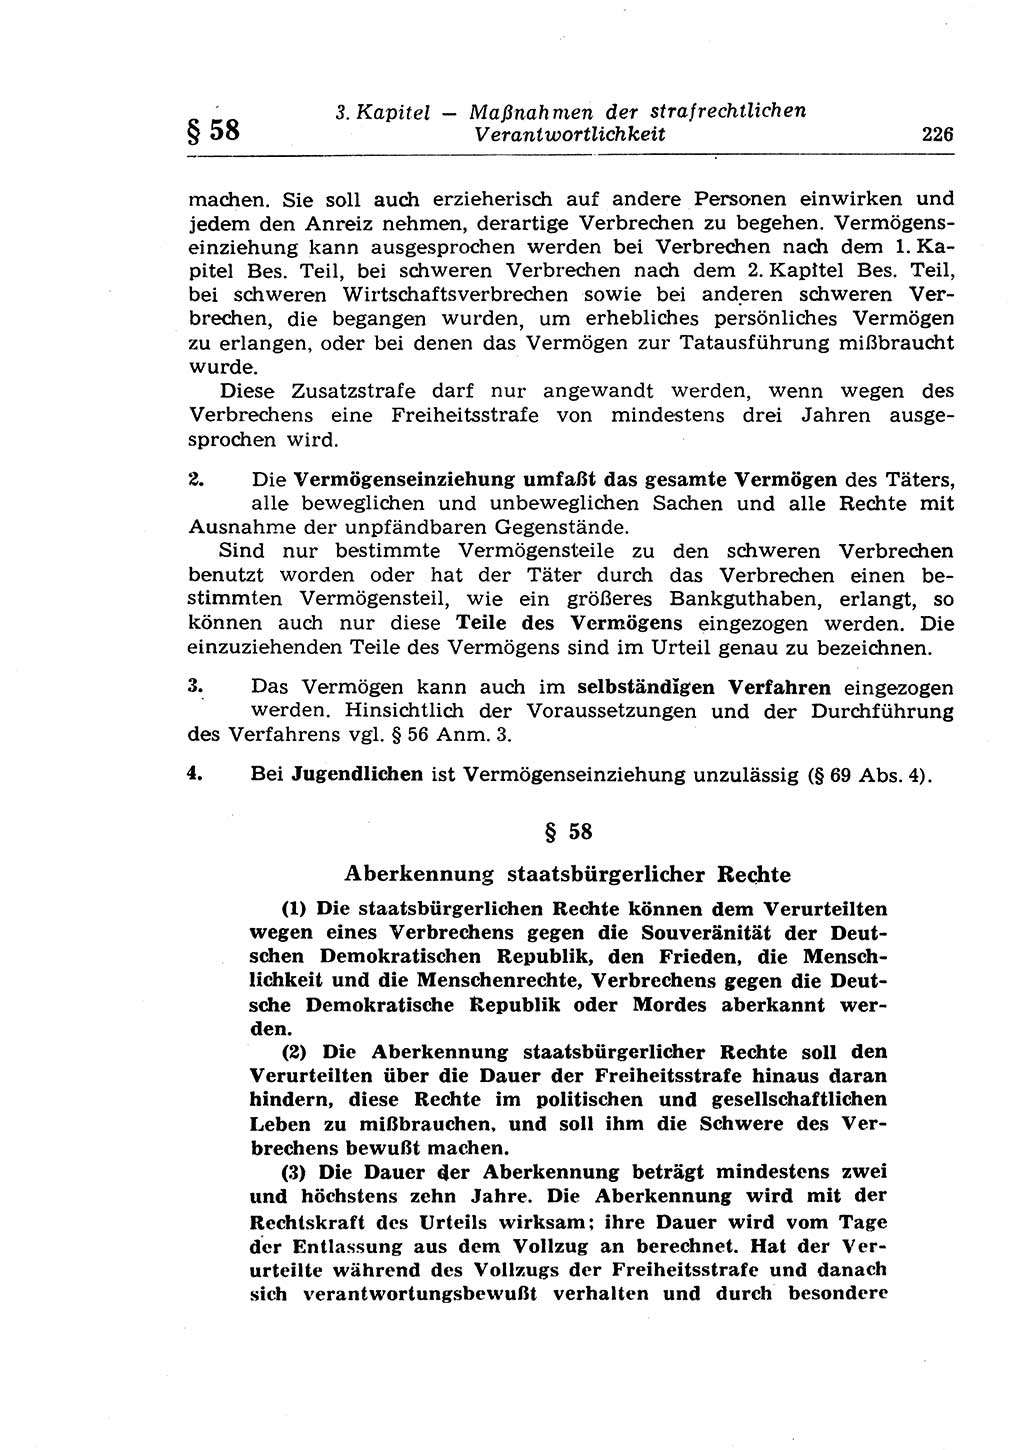 Strafrecht der Deutschen Demokratischen Republik (DDR), Lehrkommentar zum Strafgesetzbuch (StGB), Allgemeiner Teil 1969, Seite 226 (Strafr. DDR Lehrkomm. StGB AT 1969, S. 226)